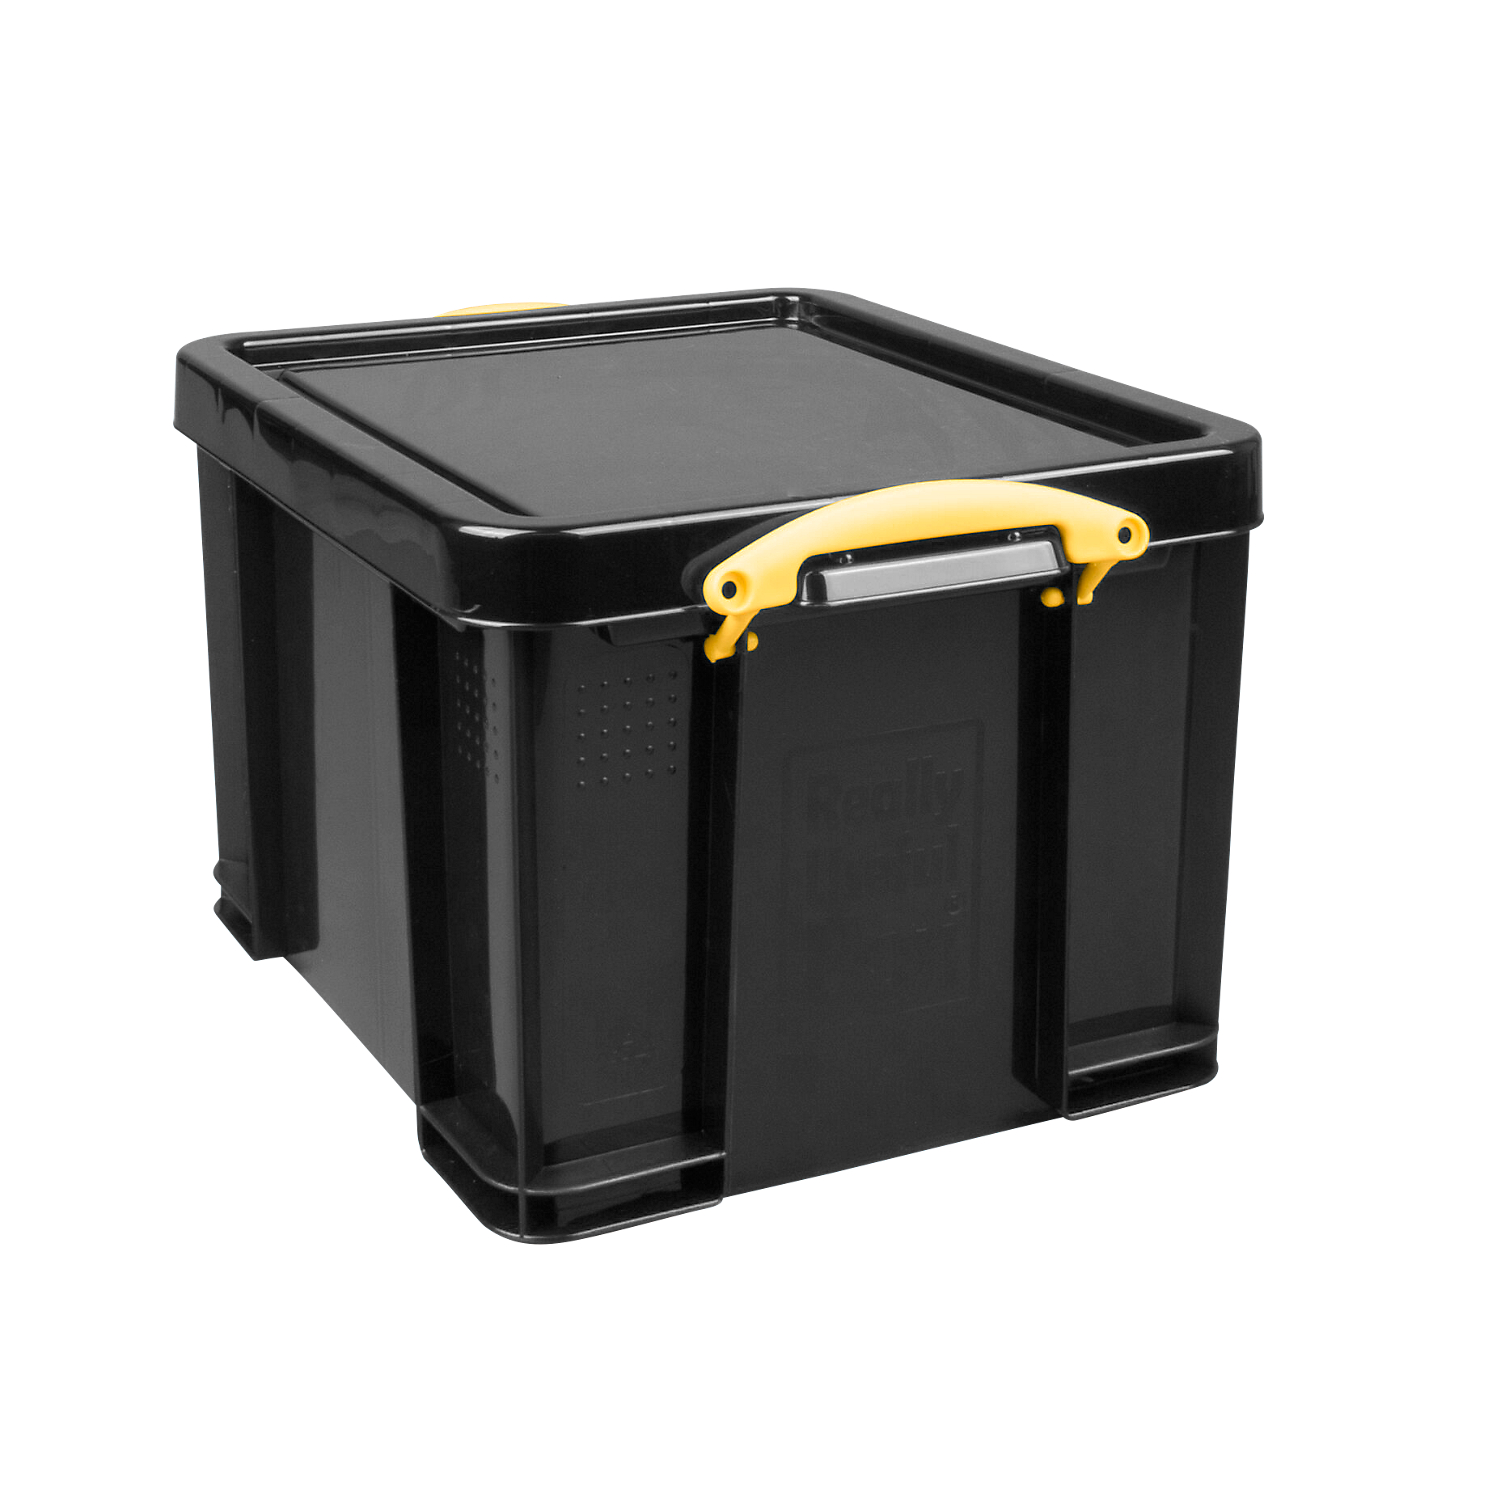 2 x Robusto Basket 64 L weiß Aufbewahrungsbox Box Kiste Transportkiste 